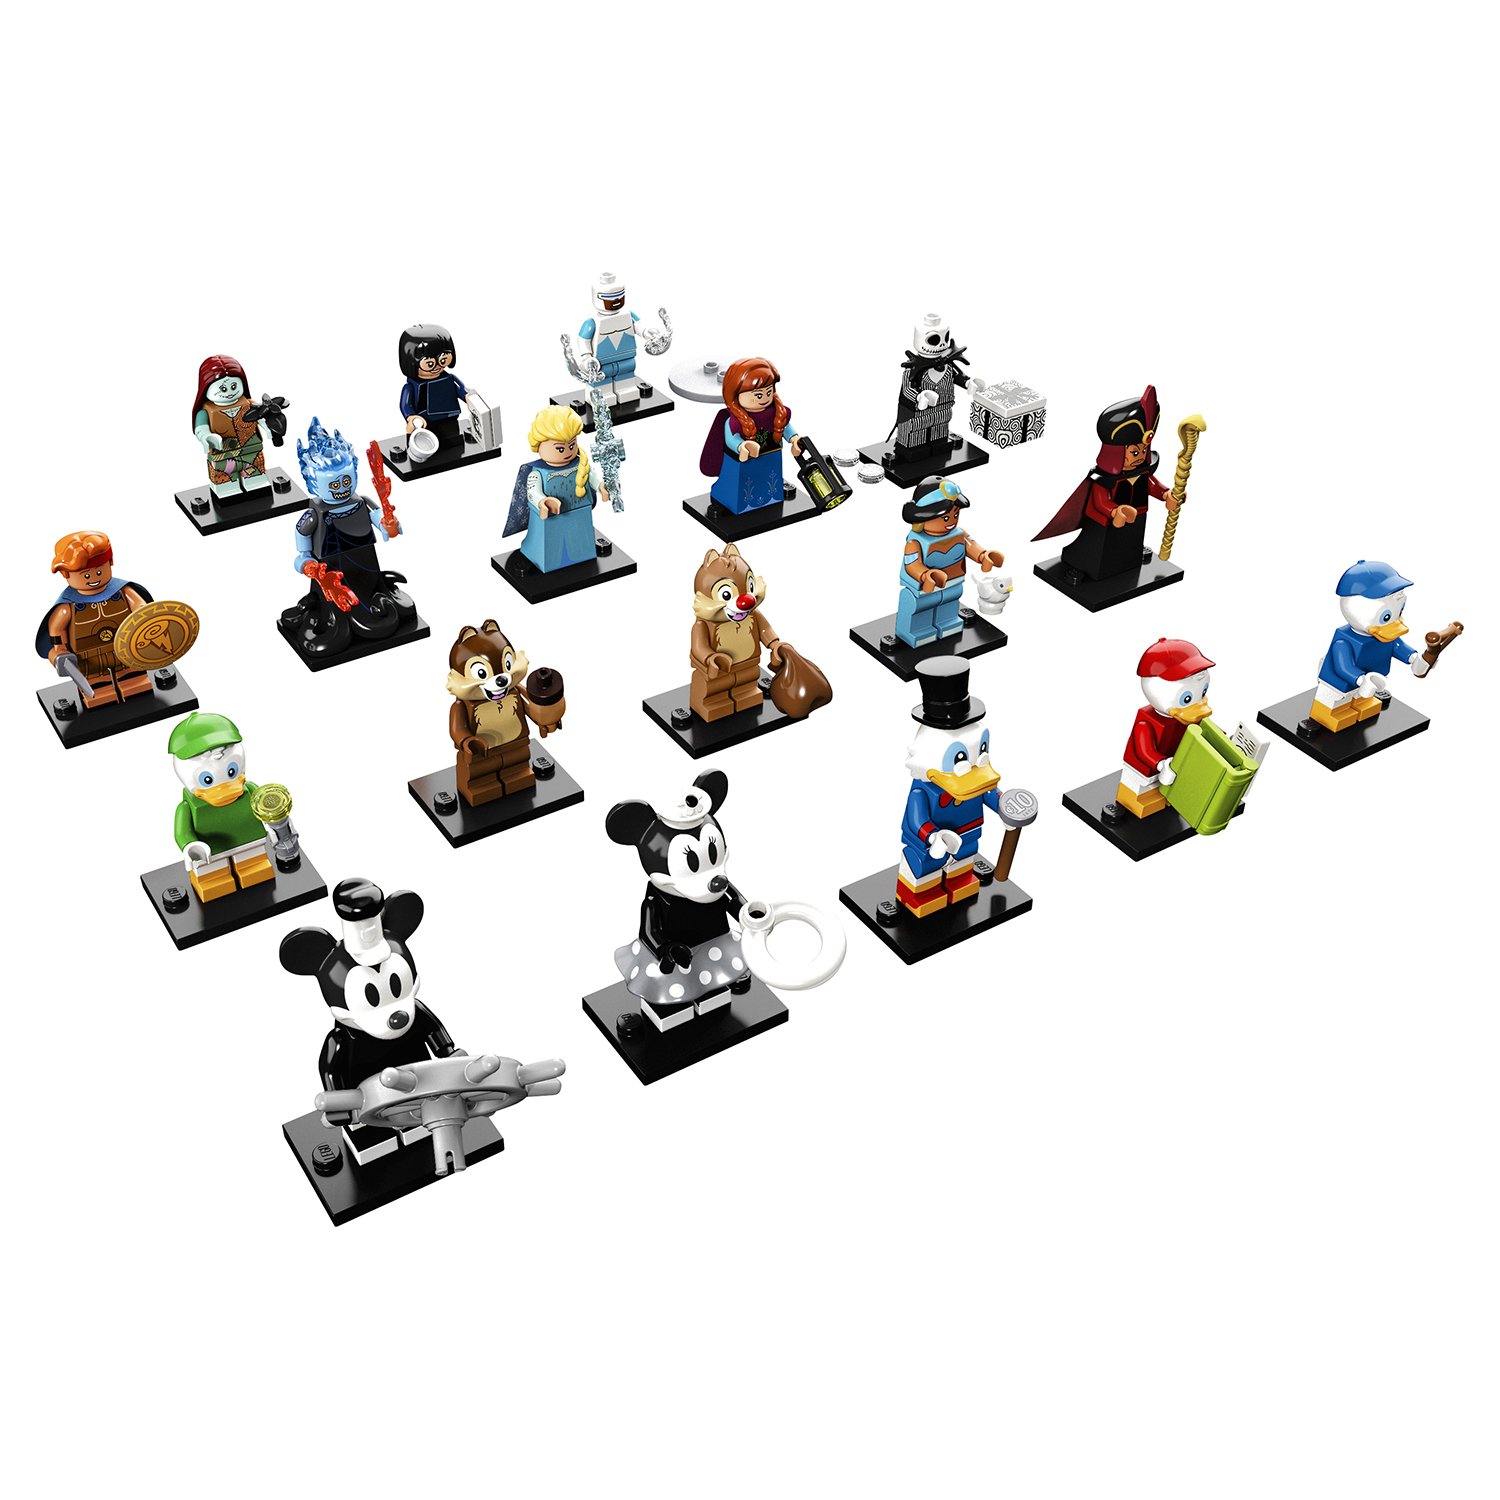 Конструктор LEGO Minifigures Серия Disney 2 71024 - фото 1